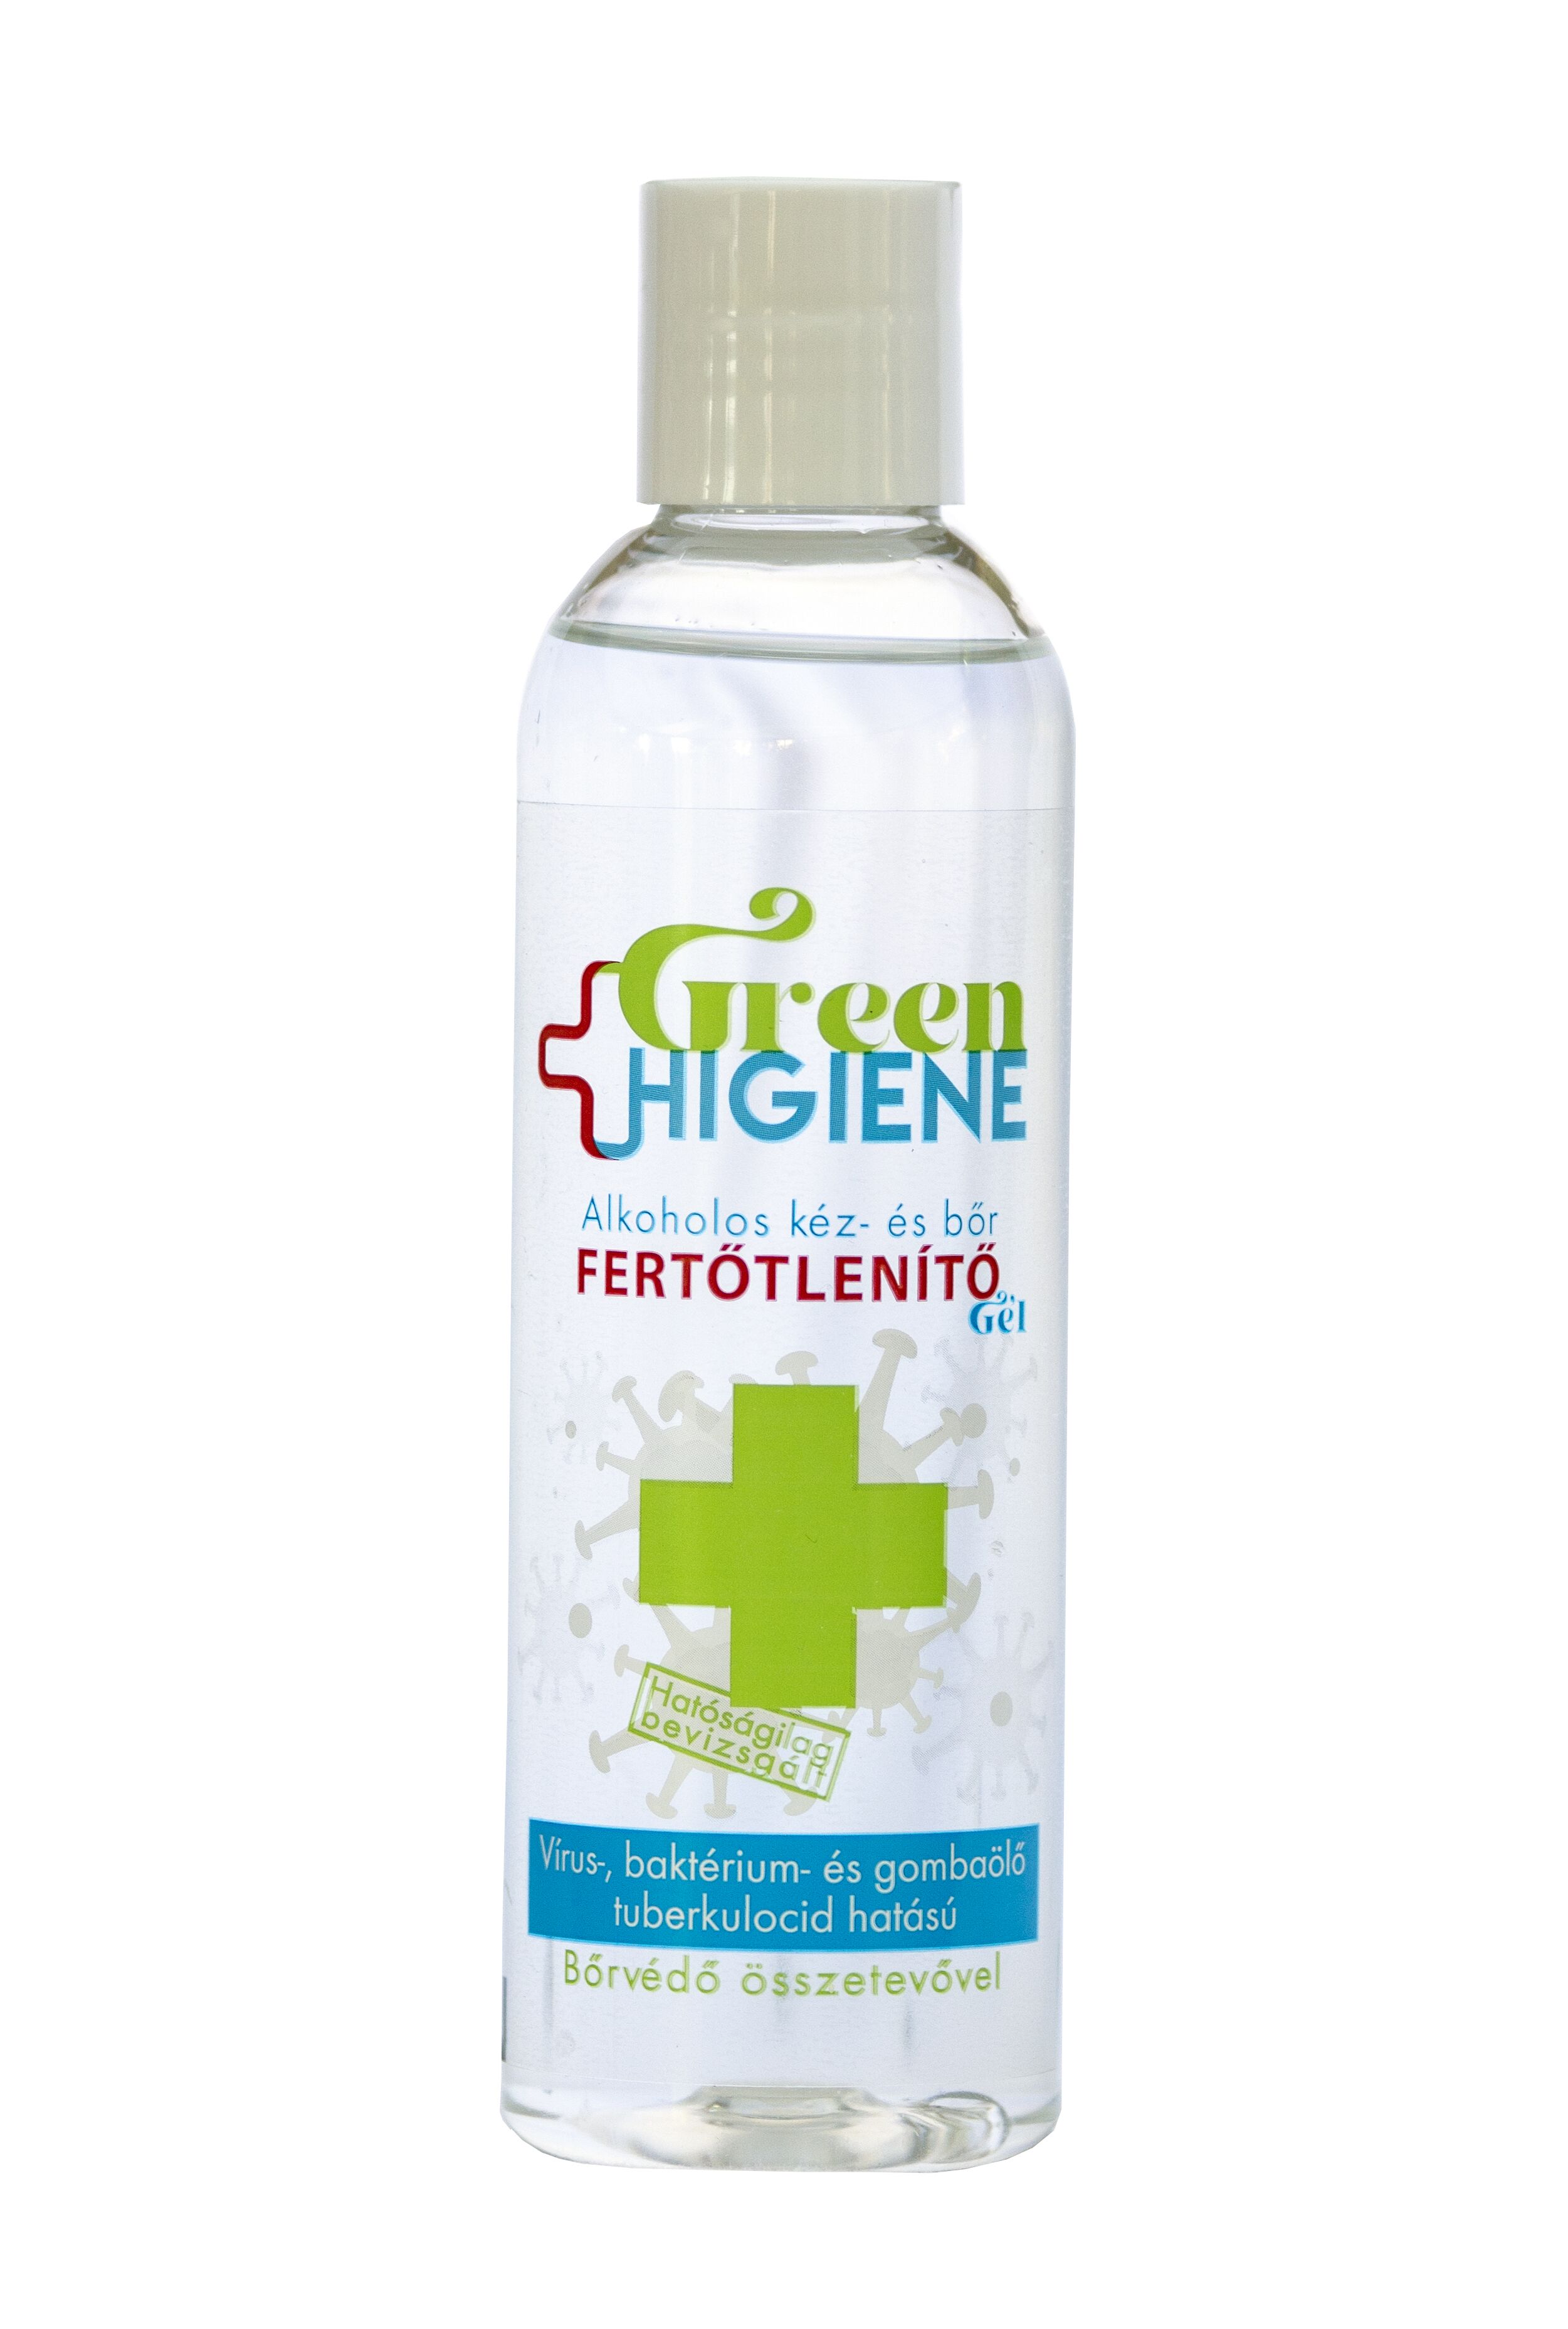 *Green Higiene Alkoholos Kézfertőtlenítő gél billenő kupakkal 200 ml